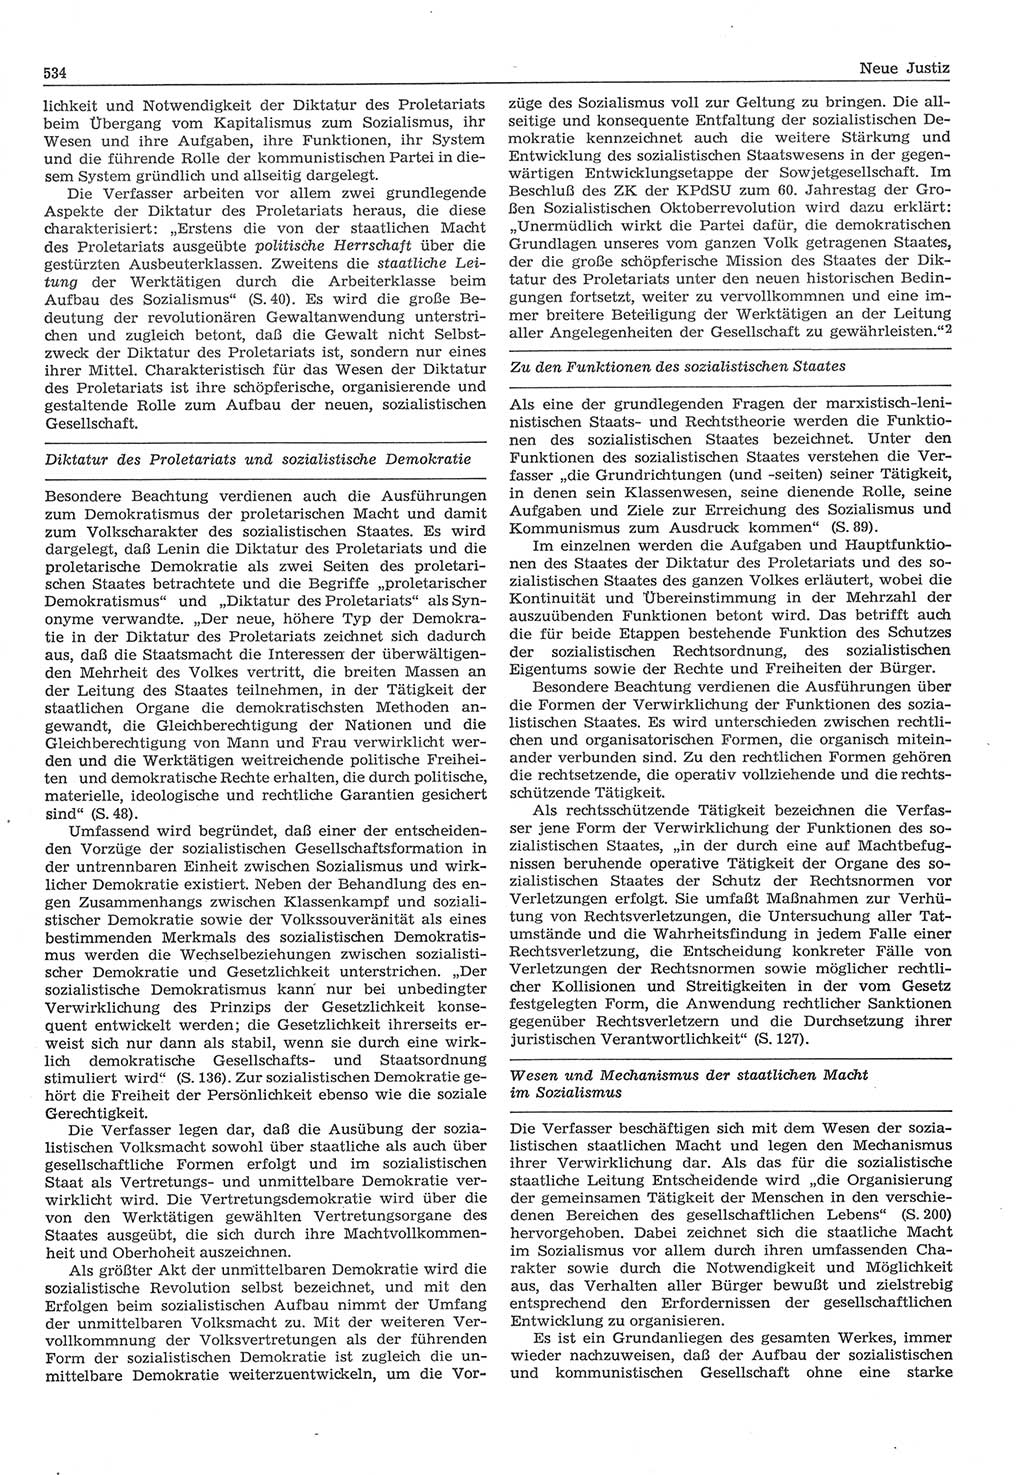 Neue Justiz (NJ), Zeitschrift für Recht und Rechtswissenschaft-Zeitschrift, sozialistisches Recht und Gesetzlichkeit, 31. Jahrgang 1977, Seite 534 (NJ DDR 1977, S. 534)